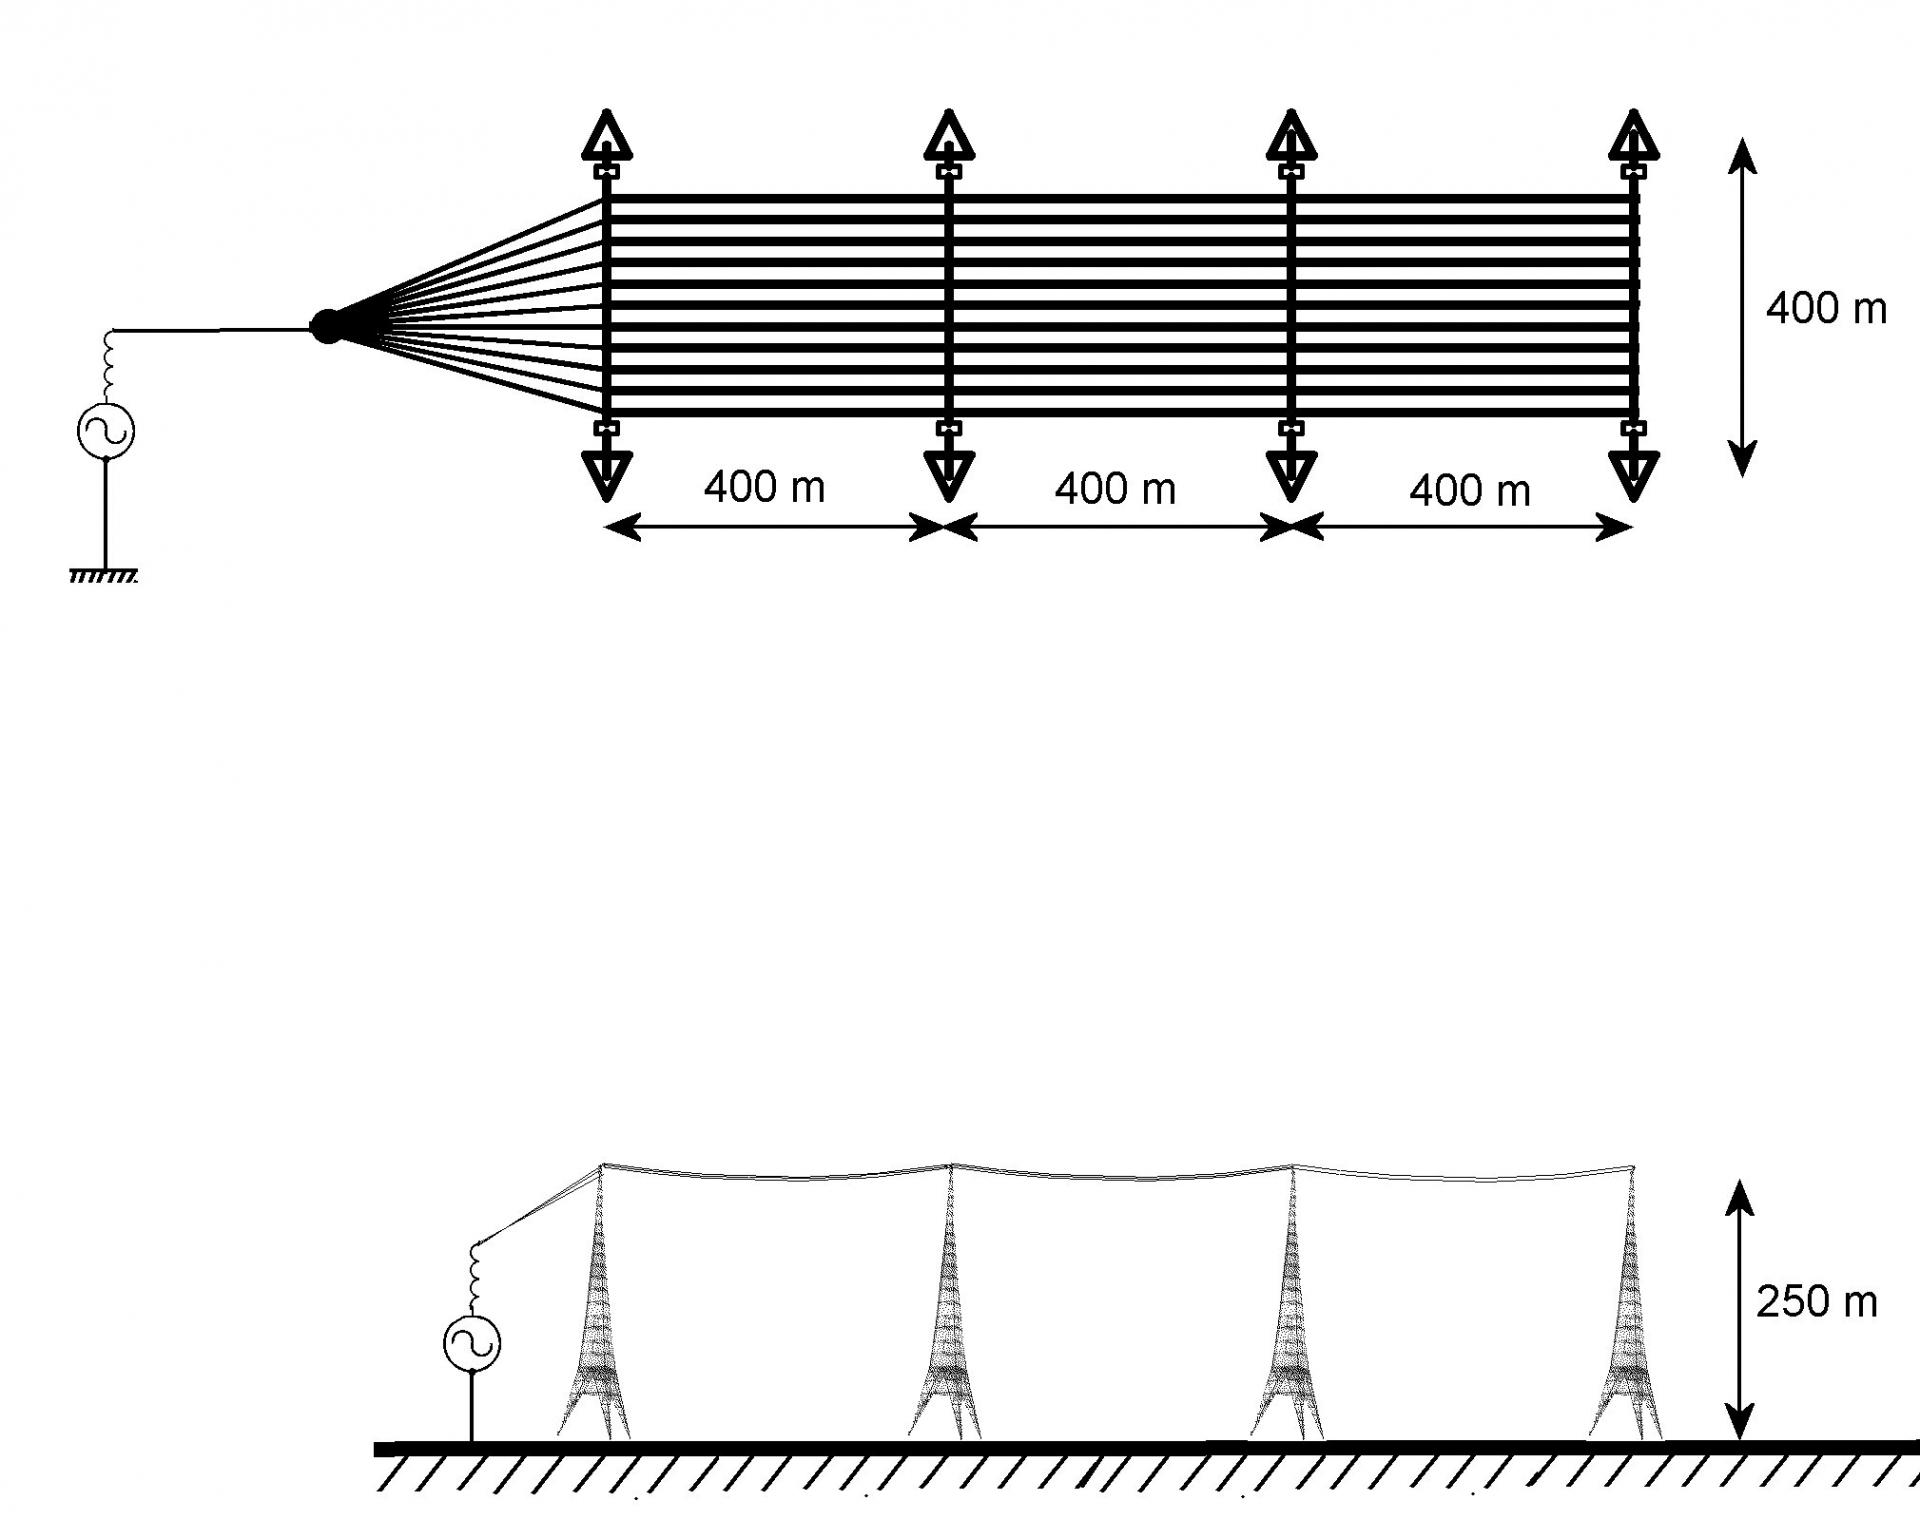 Figure plan de l antenne